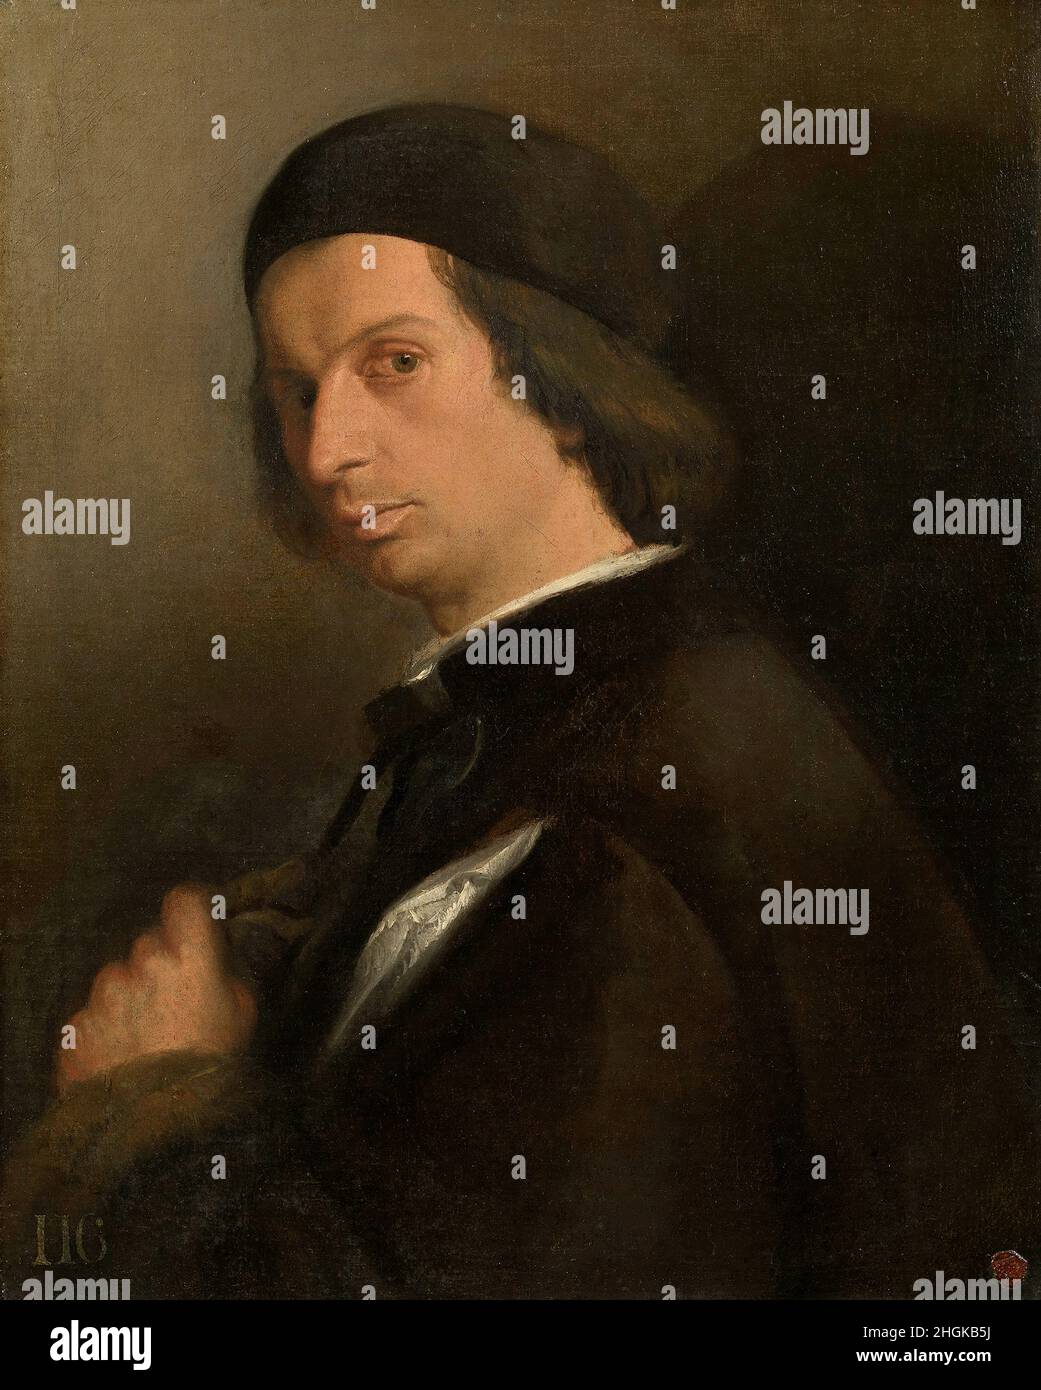 Ritratto di un uomo che tiene un guanto - 1520 25 - olio su tela 58,8 x 47,7 cm - Lotto Lorenzo Foto Stock